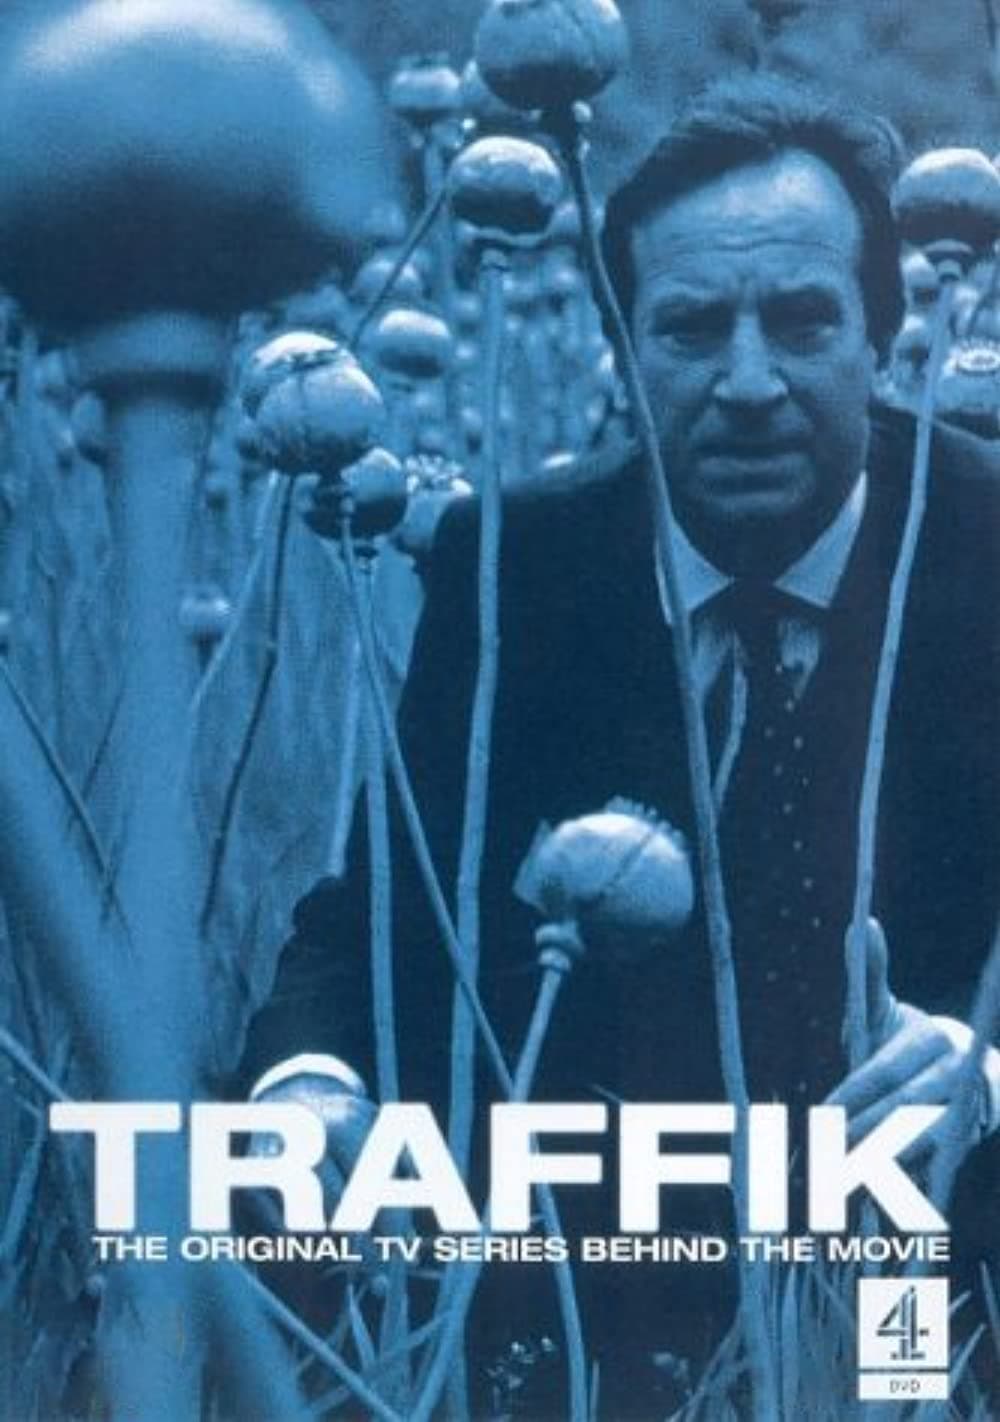 Traffik TV Shows About Drug Dealer